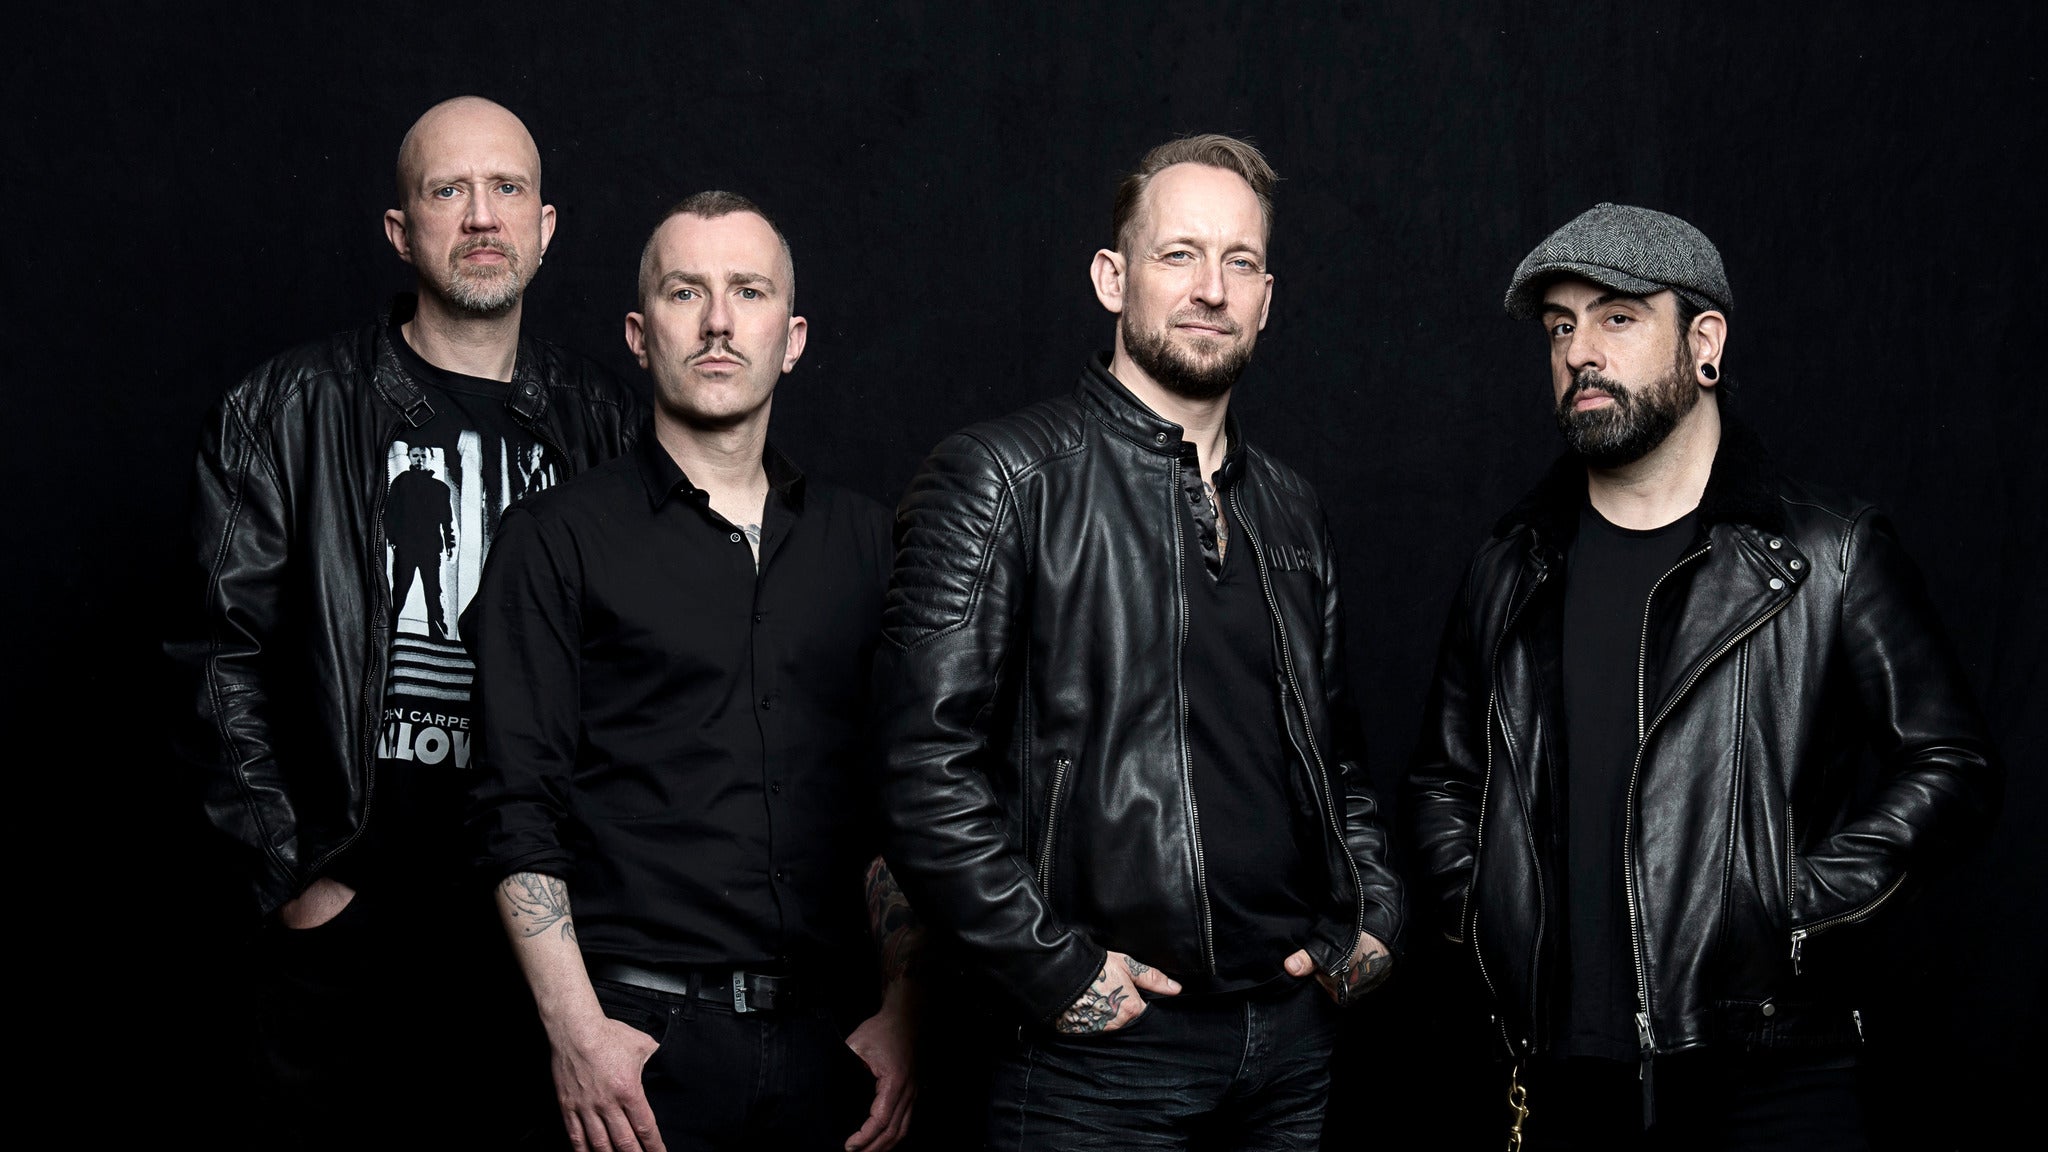 Volbeat: Servant Of The Road Tour at Mohegan Sun Arena - Uncasville, CT 06382